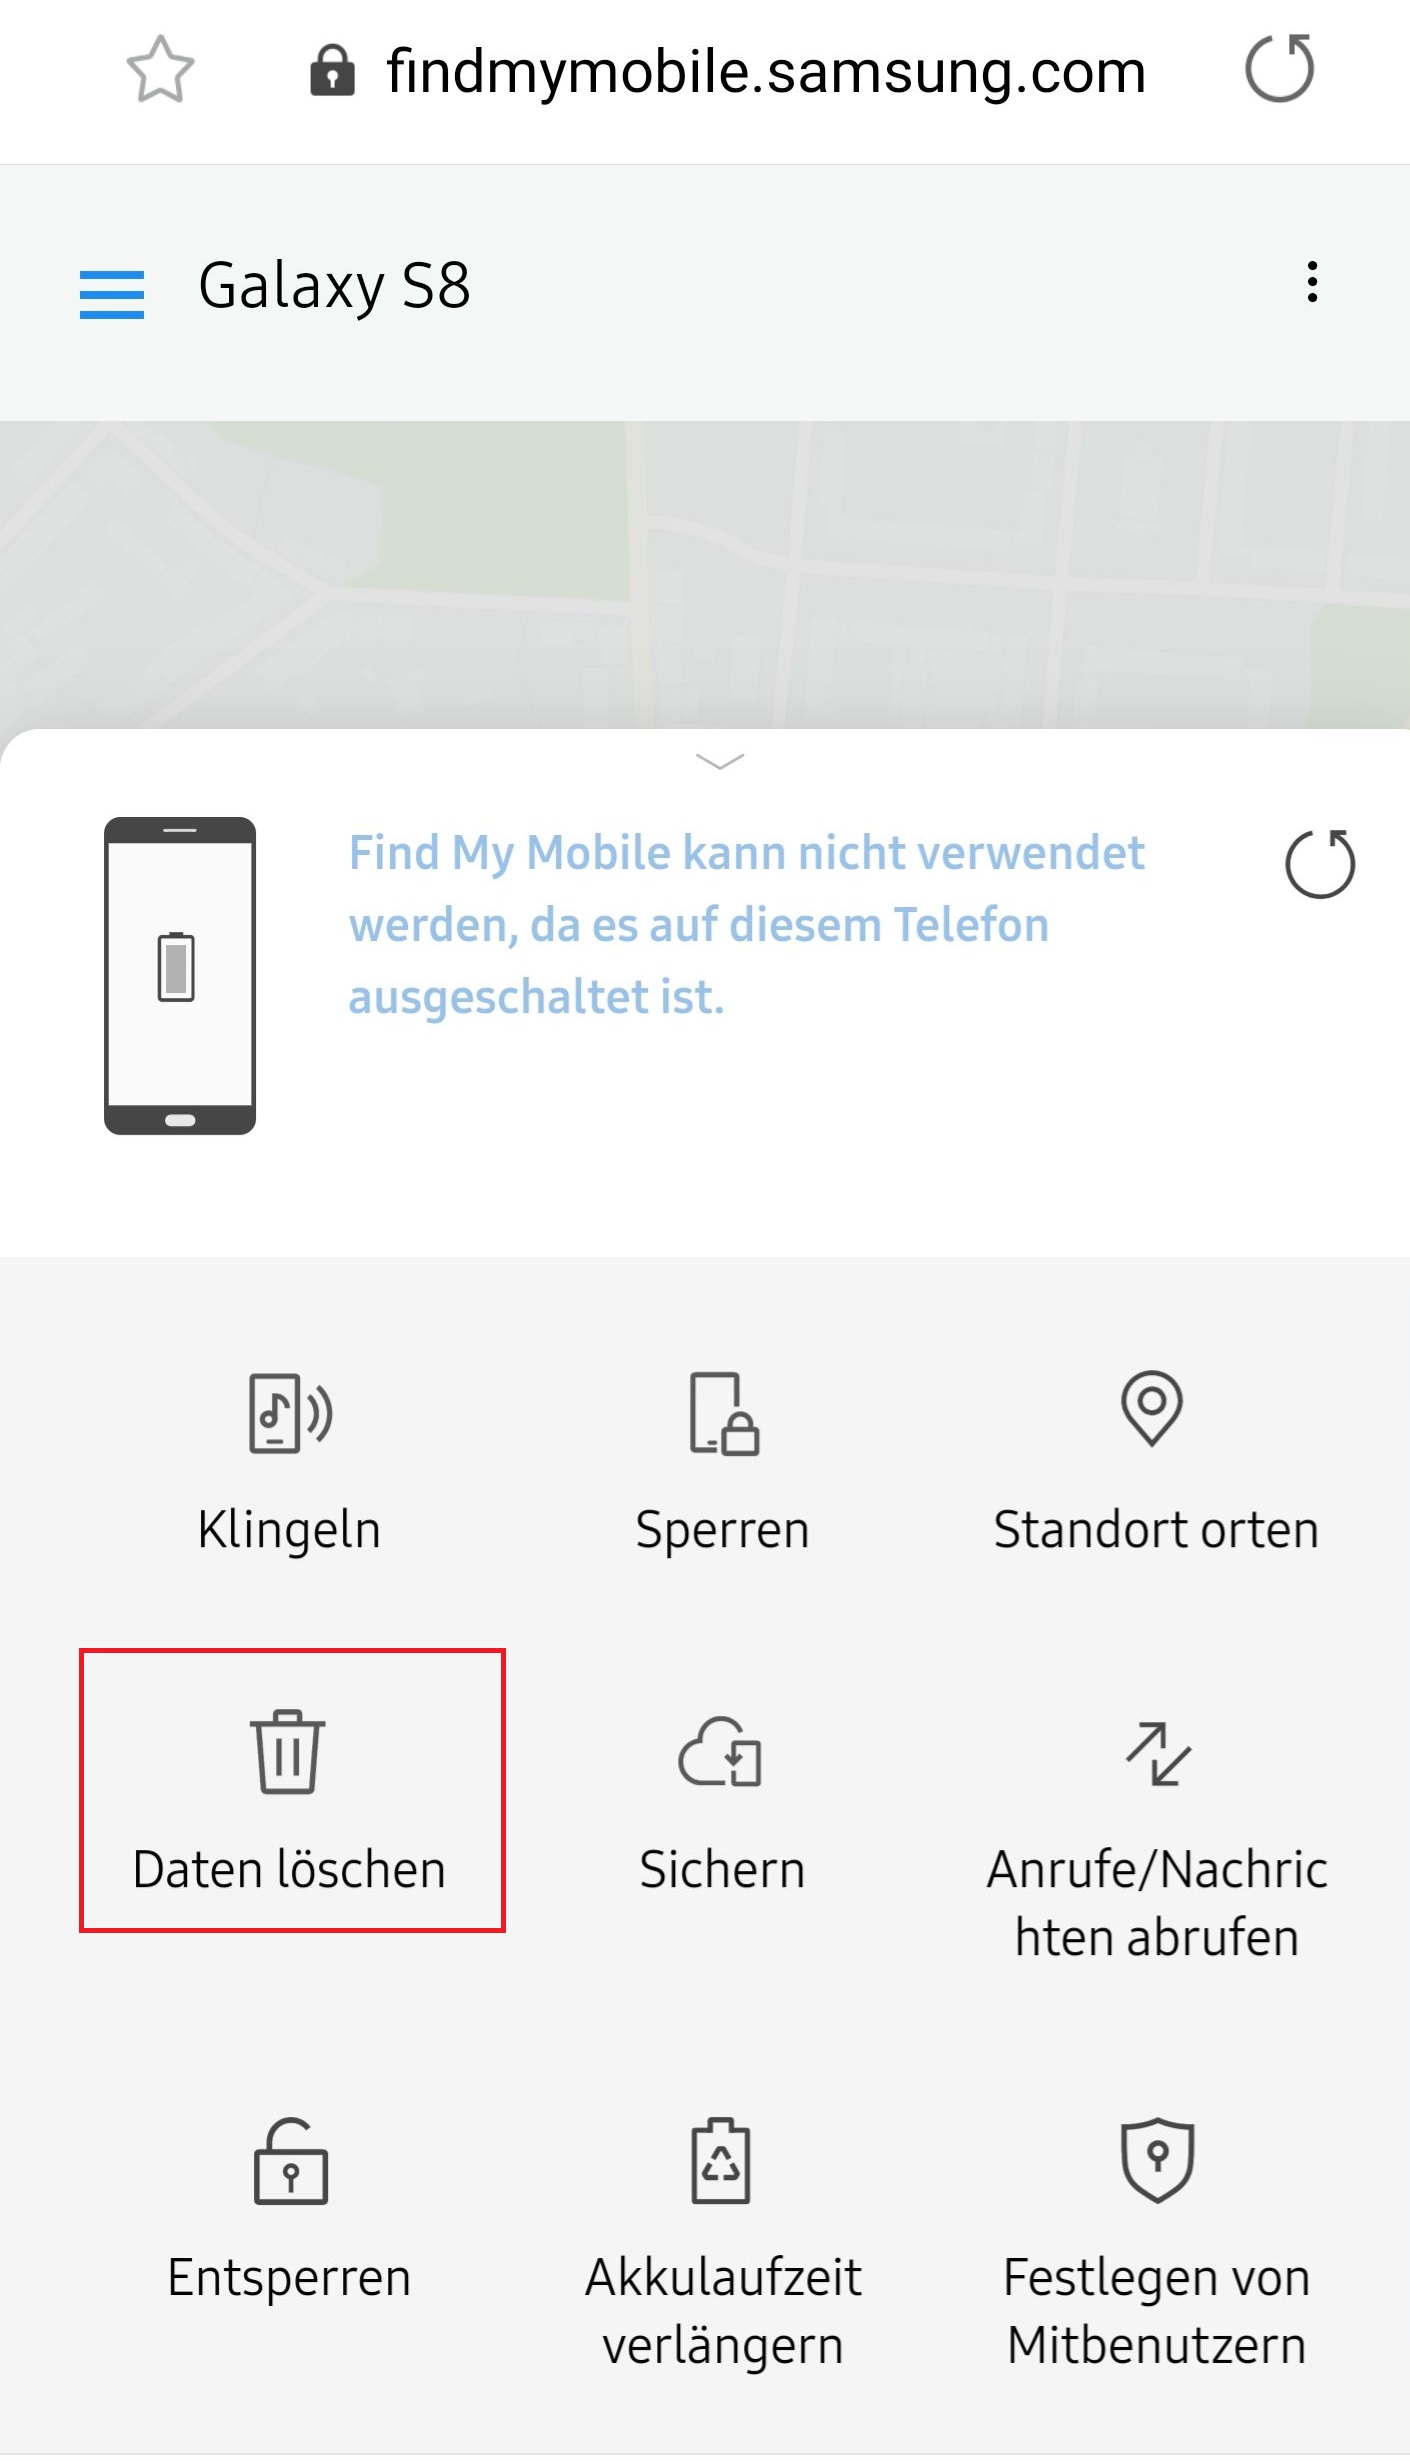 Meine Daten löschen mit Find My Mobile auf Samsung